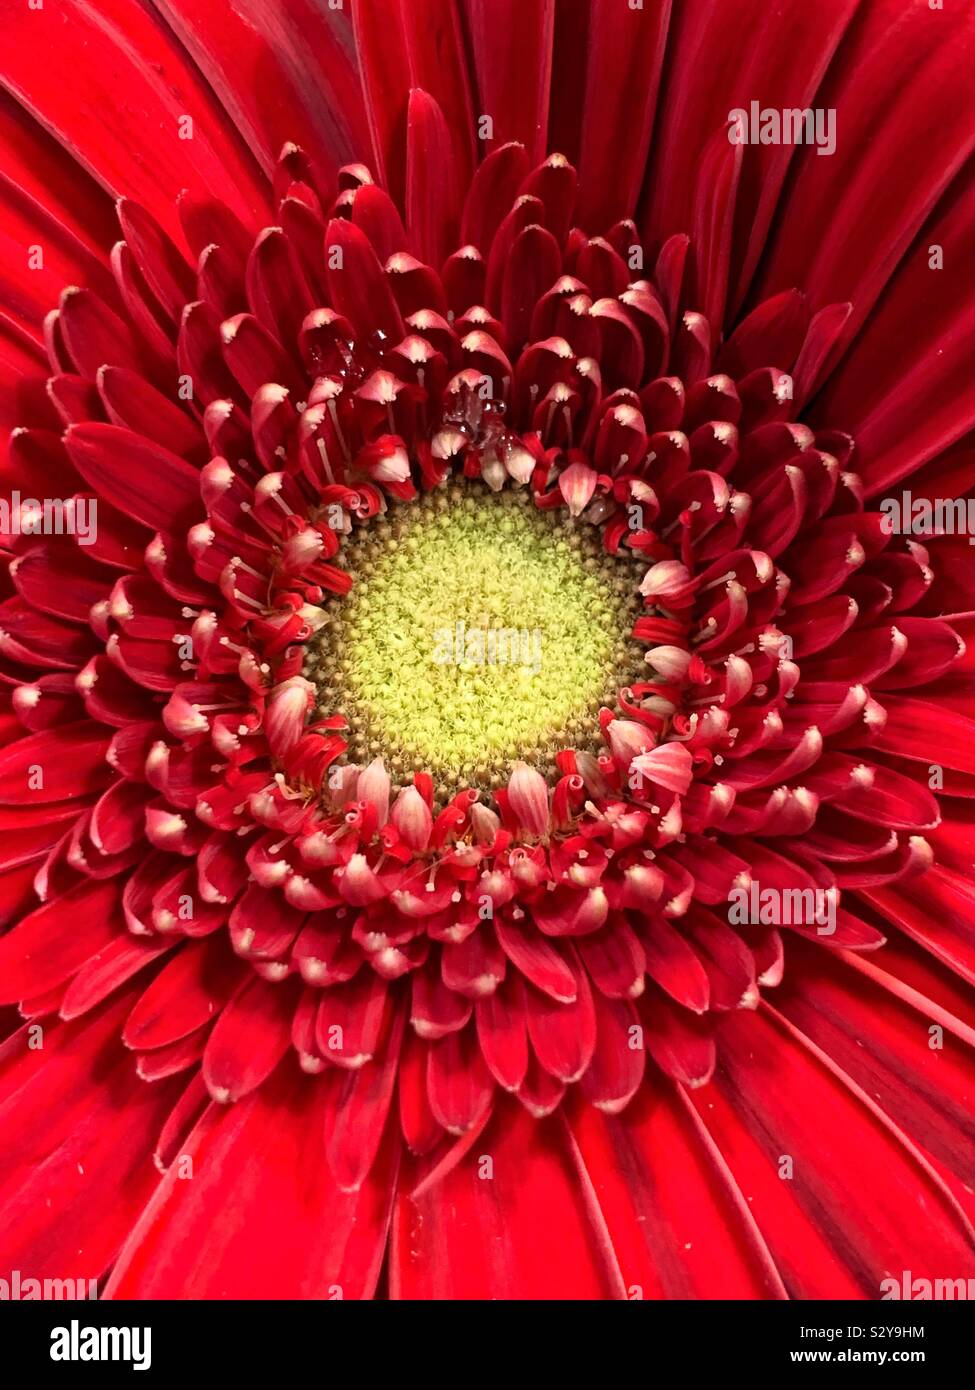 Telaio completo dettaglio di un enorme red daisy blossom Foto Stock